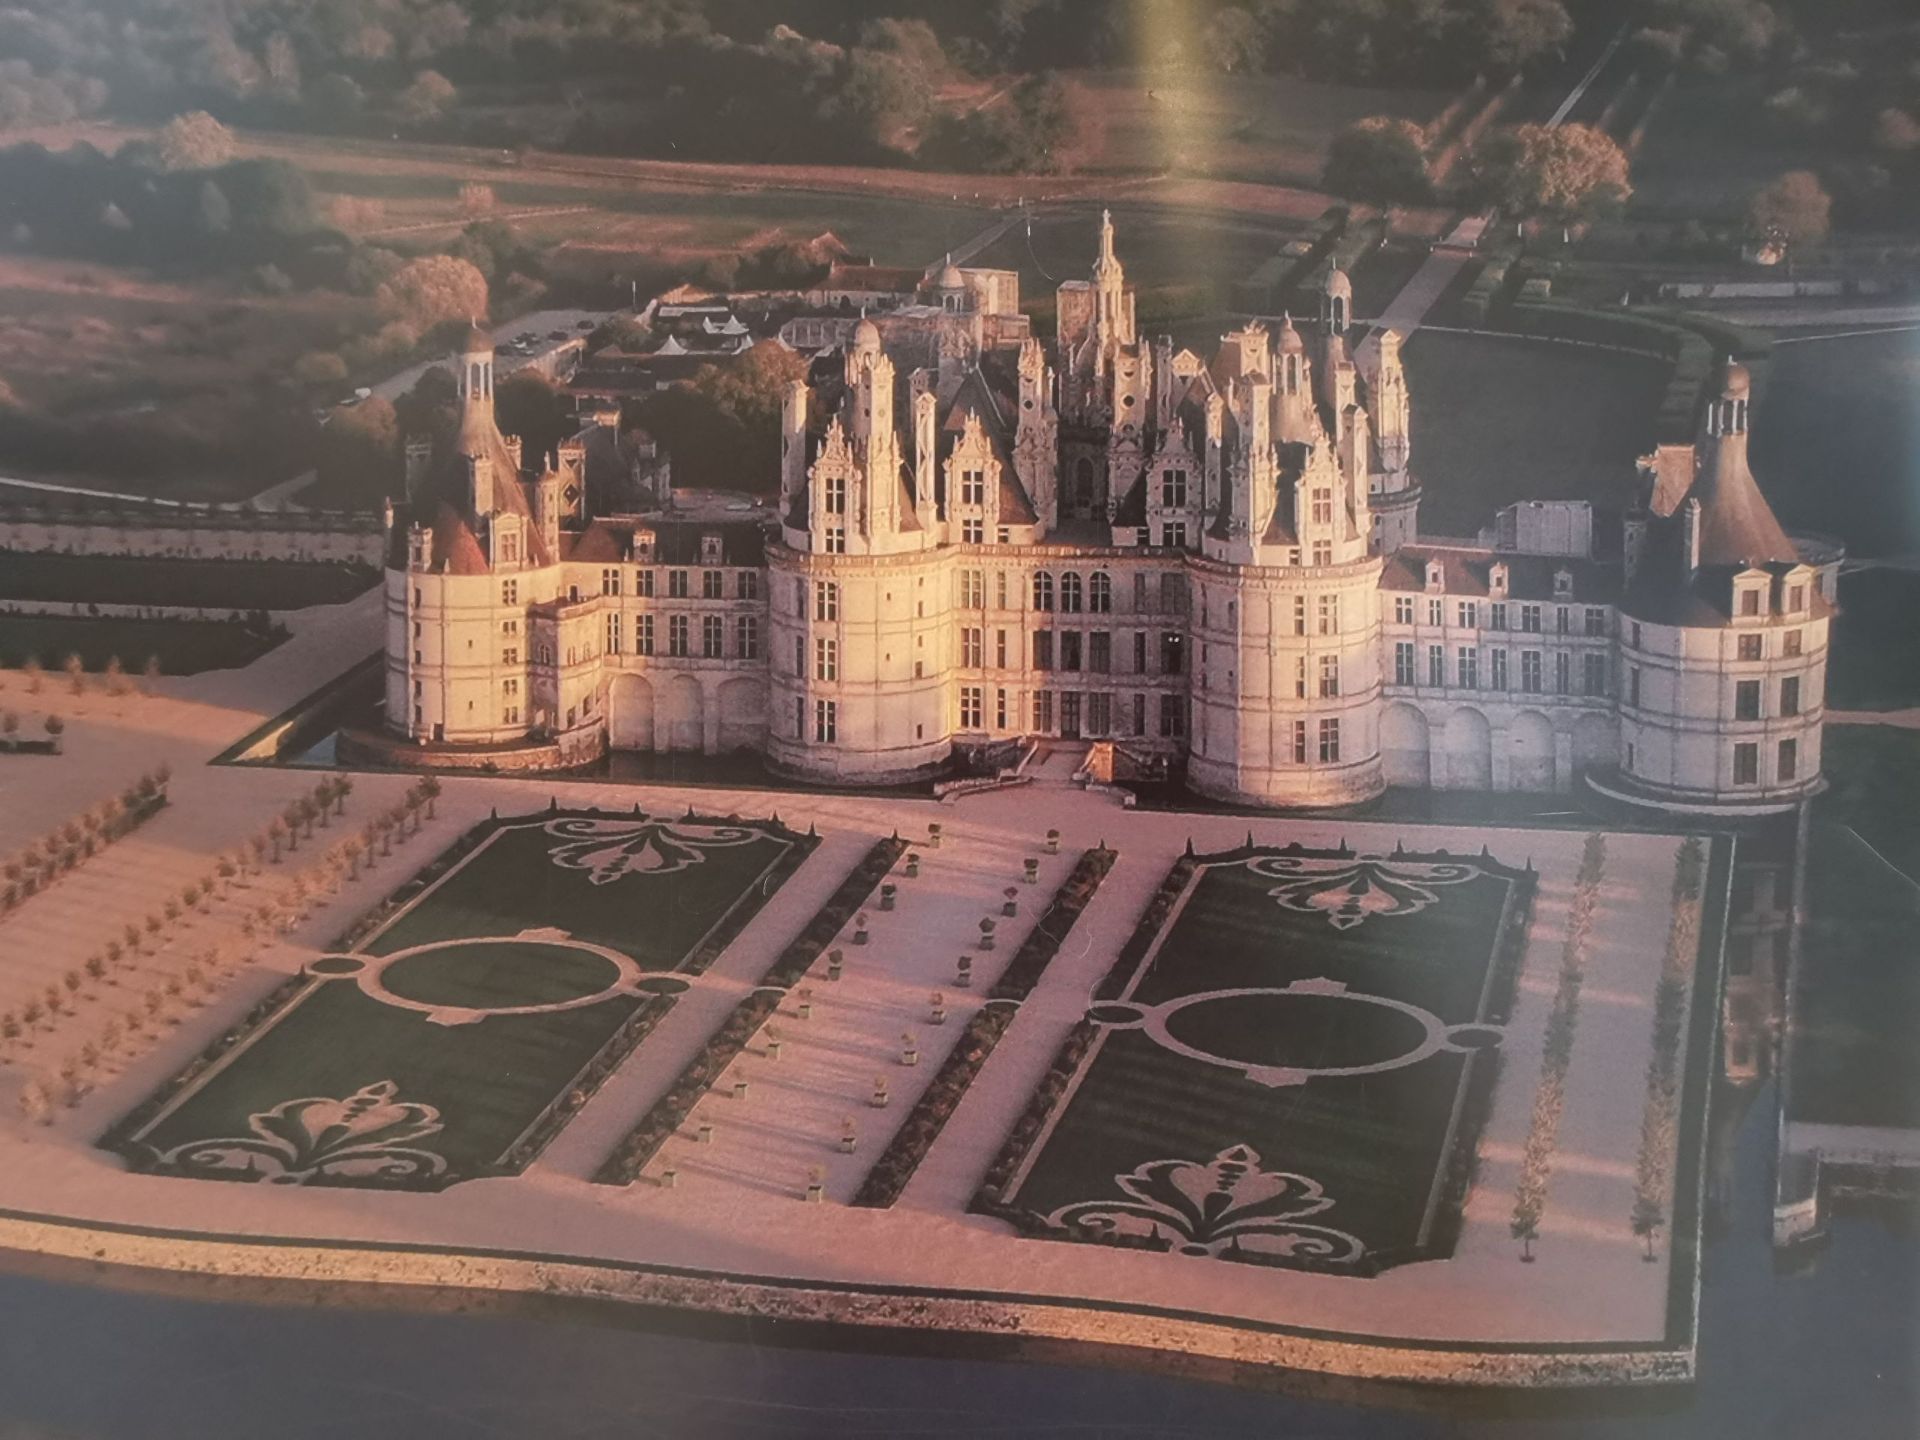 在歐洲有很多古堡， 而其中法國的古堡亦很多， 尤其是在巴黎近郊的。 例如有凡爾塞宮， 羅浮宮， 楓丹